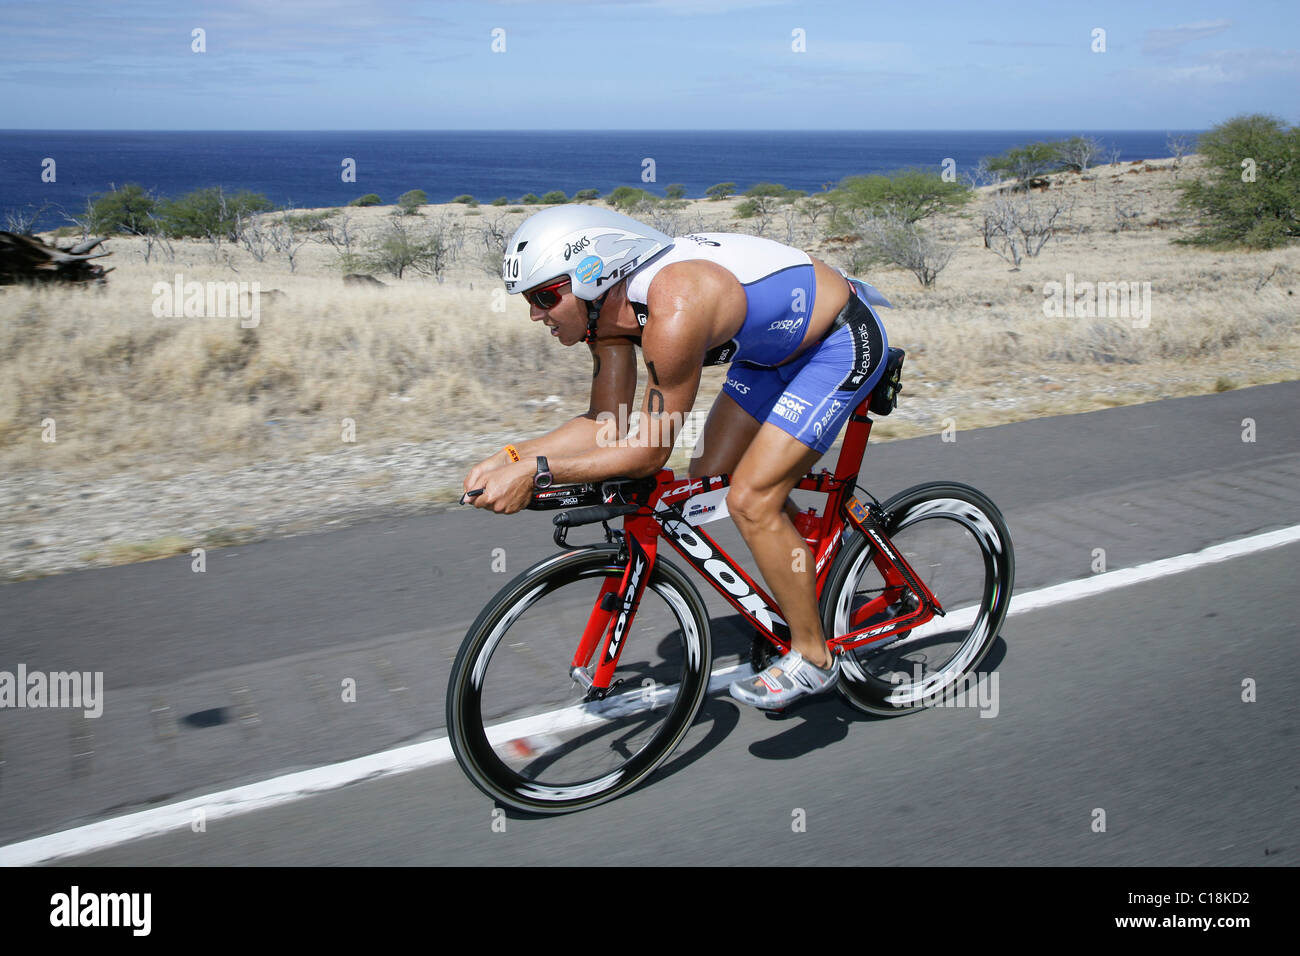 Patrick Vernay, Nueva Caledonia, en el campeonato mundial de ciclismo Ironman-Triathlon stretch, 10/11/2008, en Kailua-Kona, Hawaii, EE.UU. Foto de stock